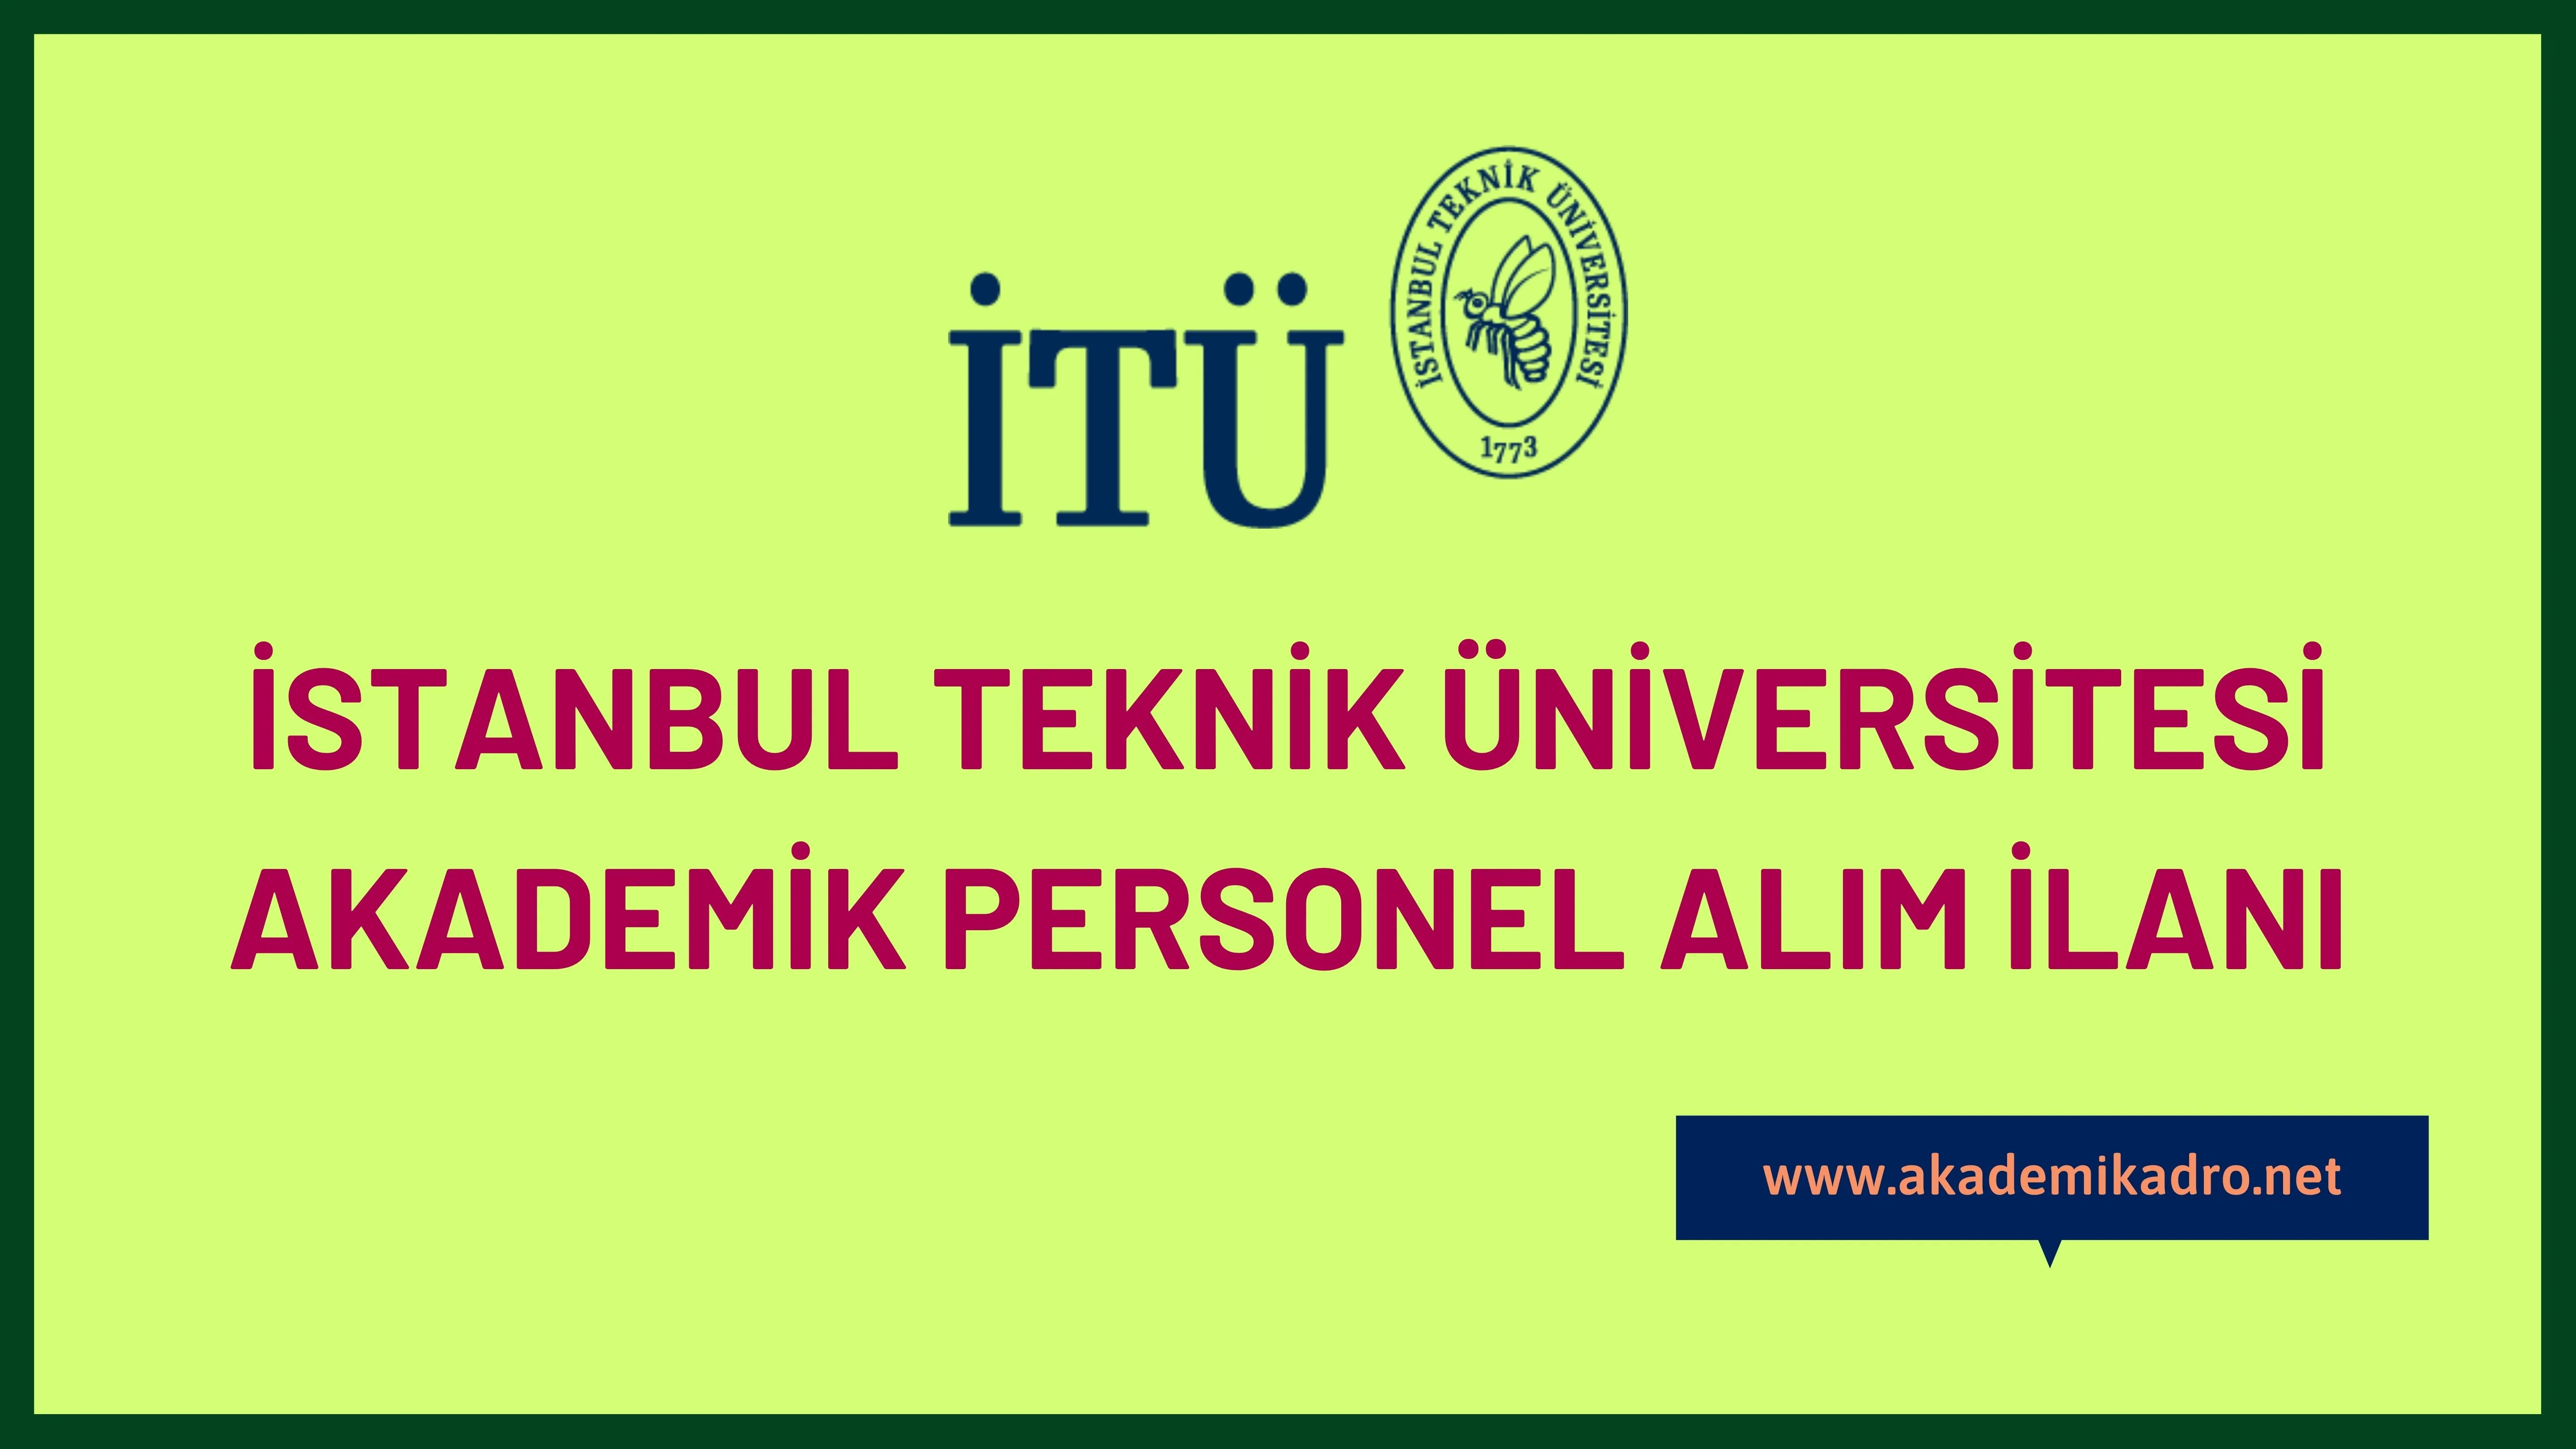 İstanbul Teknik Üniversitesi birçok alandan 47 Öğretim üyesi alacak. Son başvuru tarihi 22  Aralık 2022.